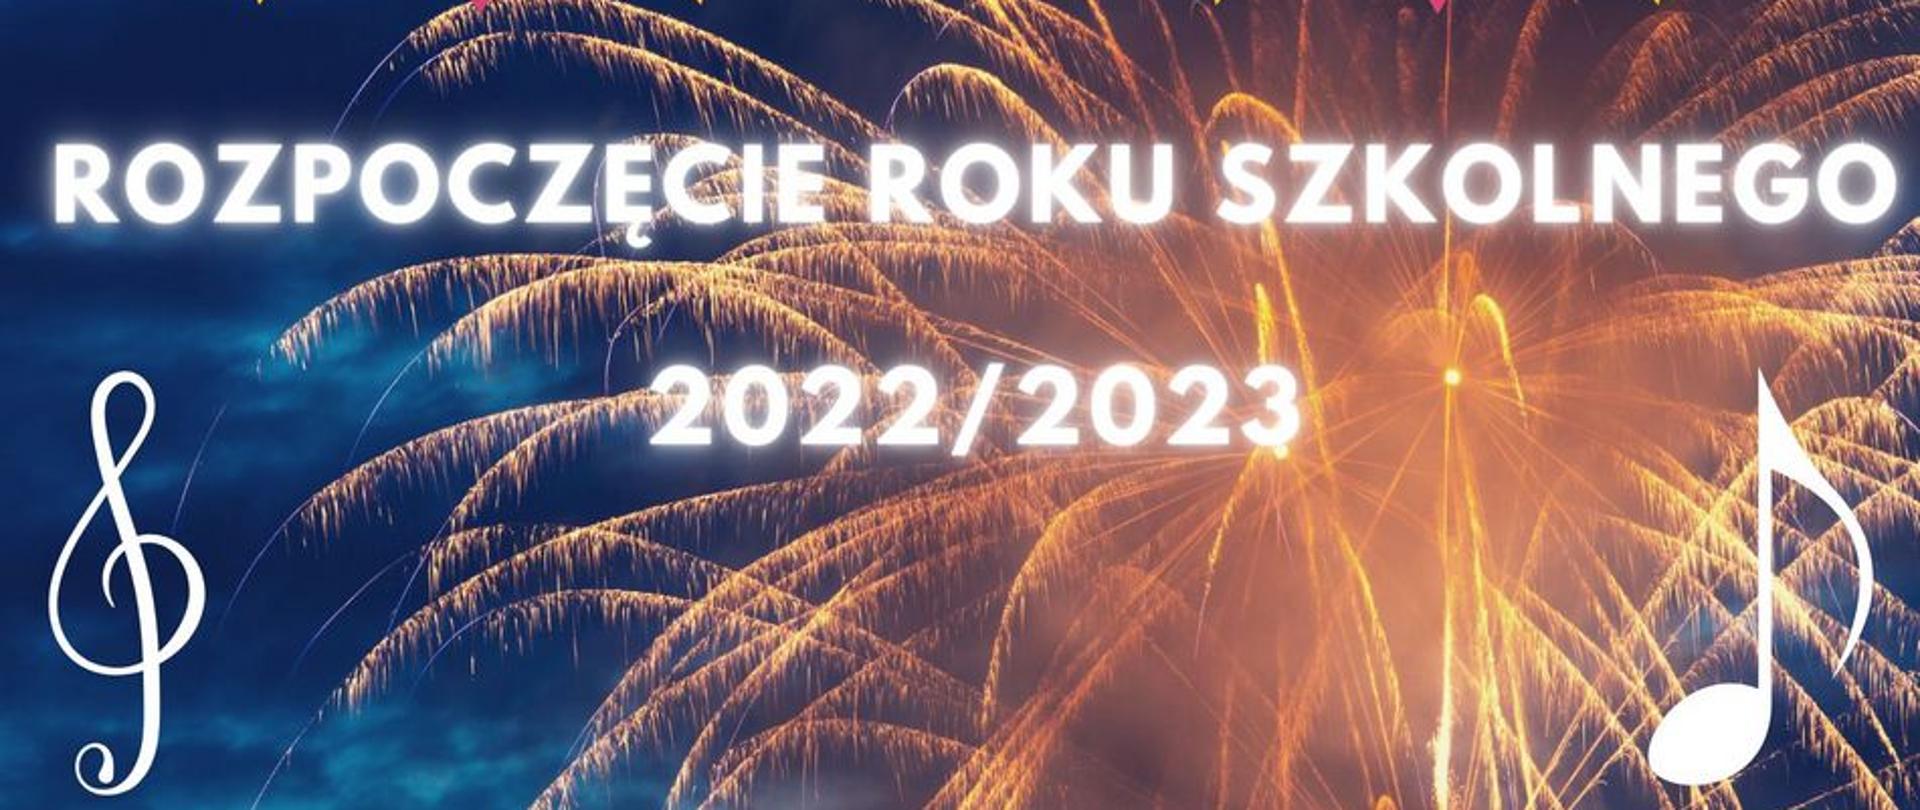 Napis na zdjęciu: Rozpoczęcie Roku Szkolnego 2022/2023. Fajerwerki, w lewym dolnym rogu klucz muzyczny, w prawym dolnym rogu nutka.